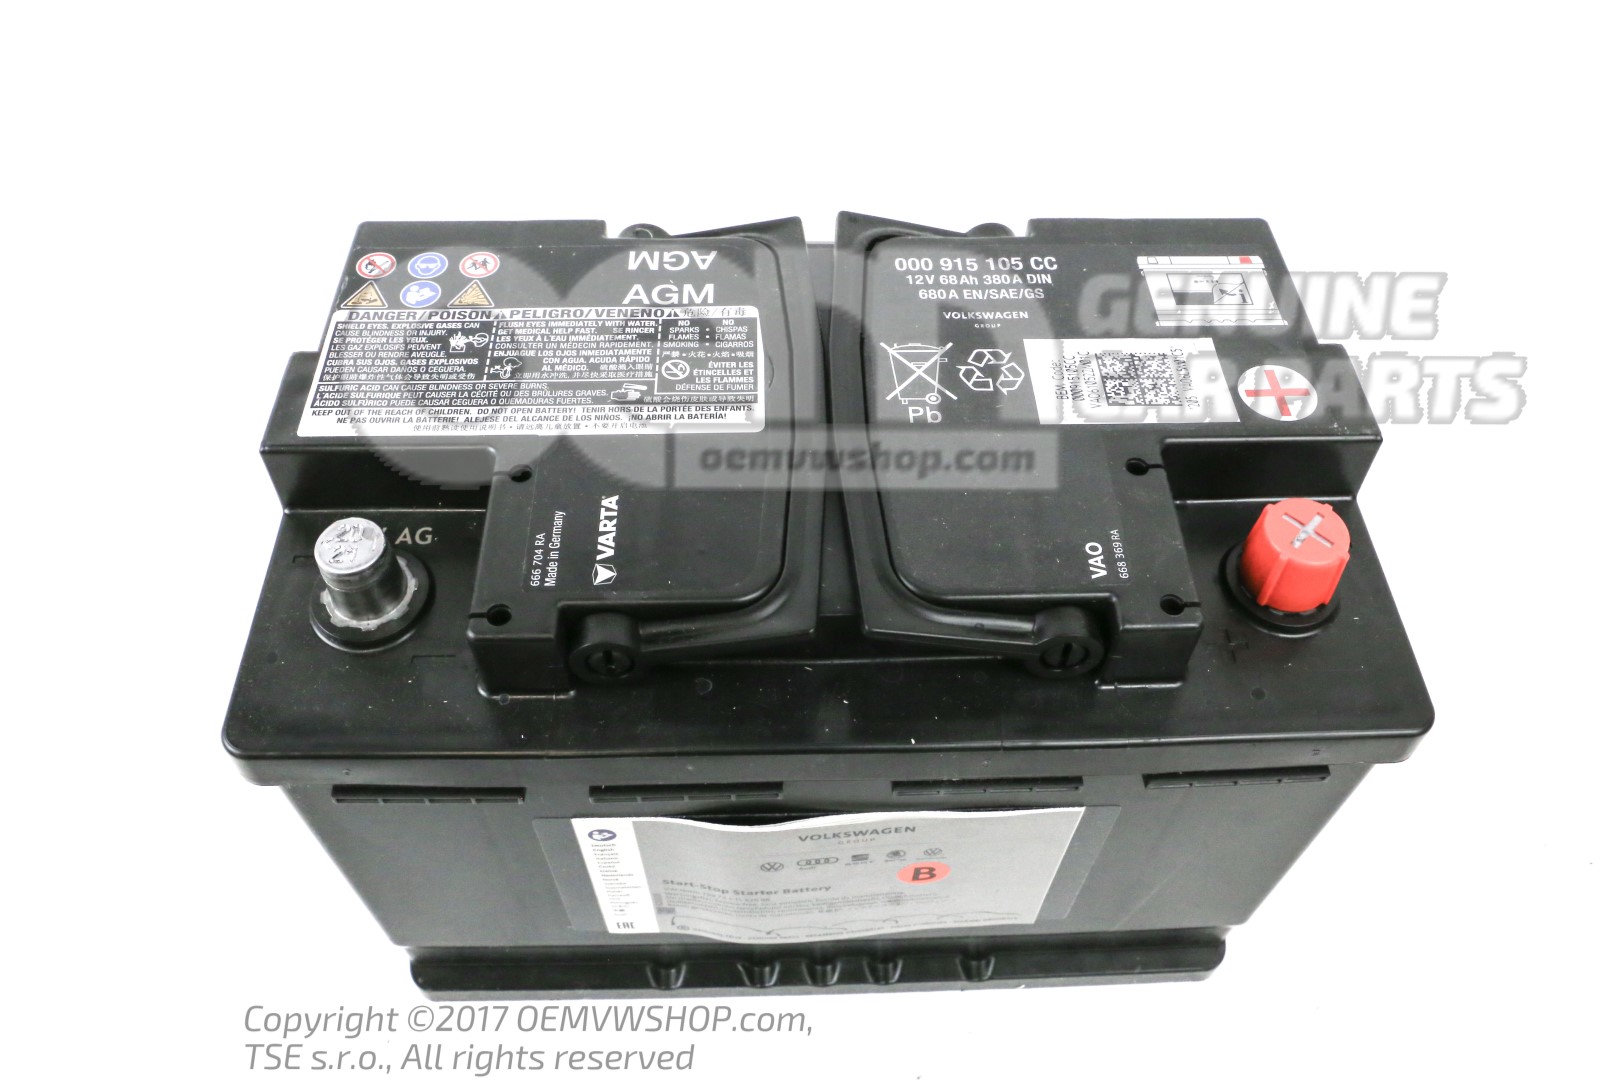 Original VOLKSWAGEN Autobatterien - 000 915 105 DK